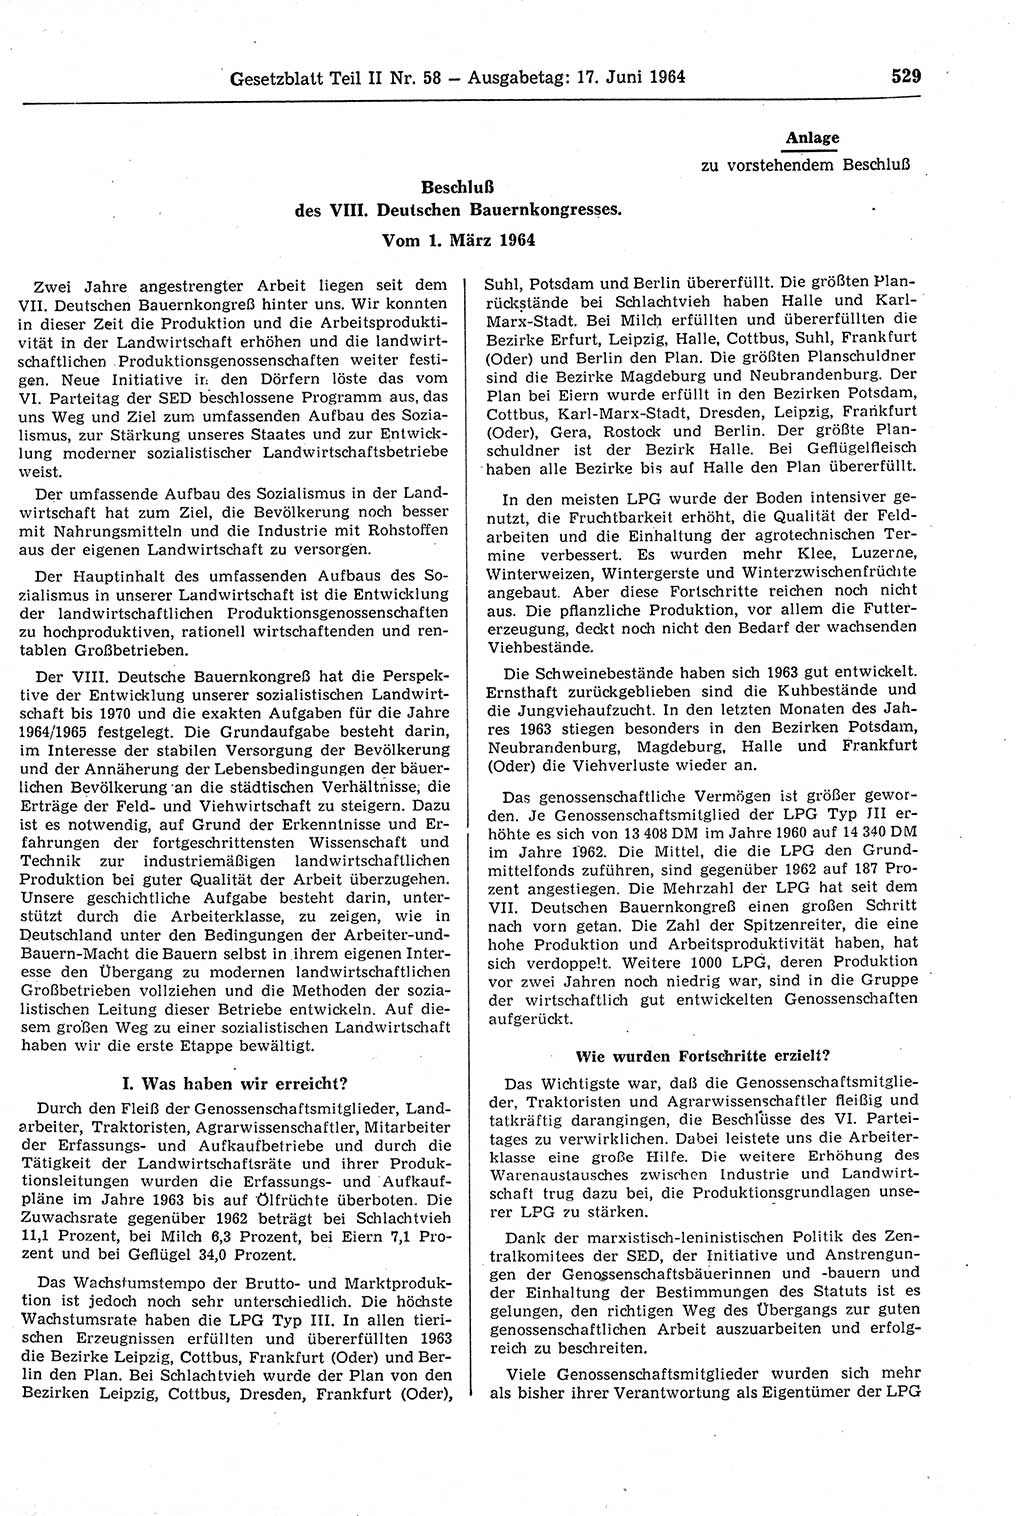 Gesetzblatt (GBl.) der Deutschen Demokratischen Republik (DDR) Teil ⅠⅠ 1964, Seite 529 (GBl. DDR ⅠⅠ 1964, S. 529)